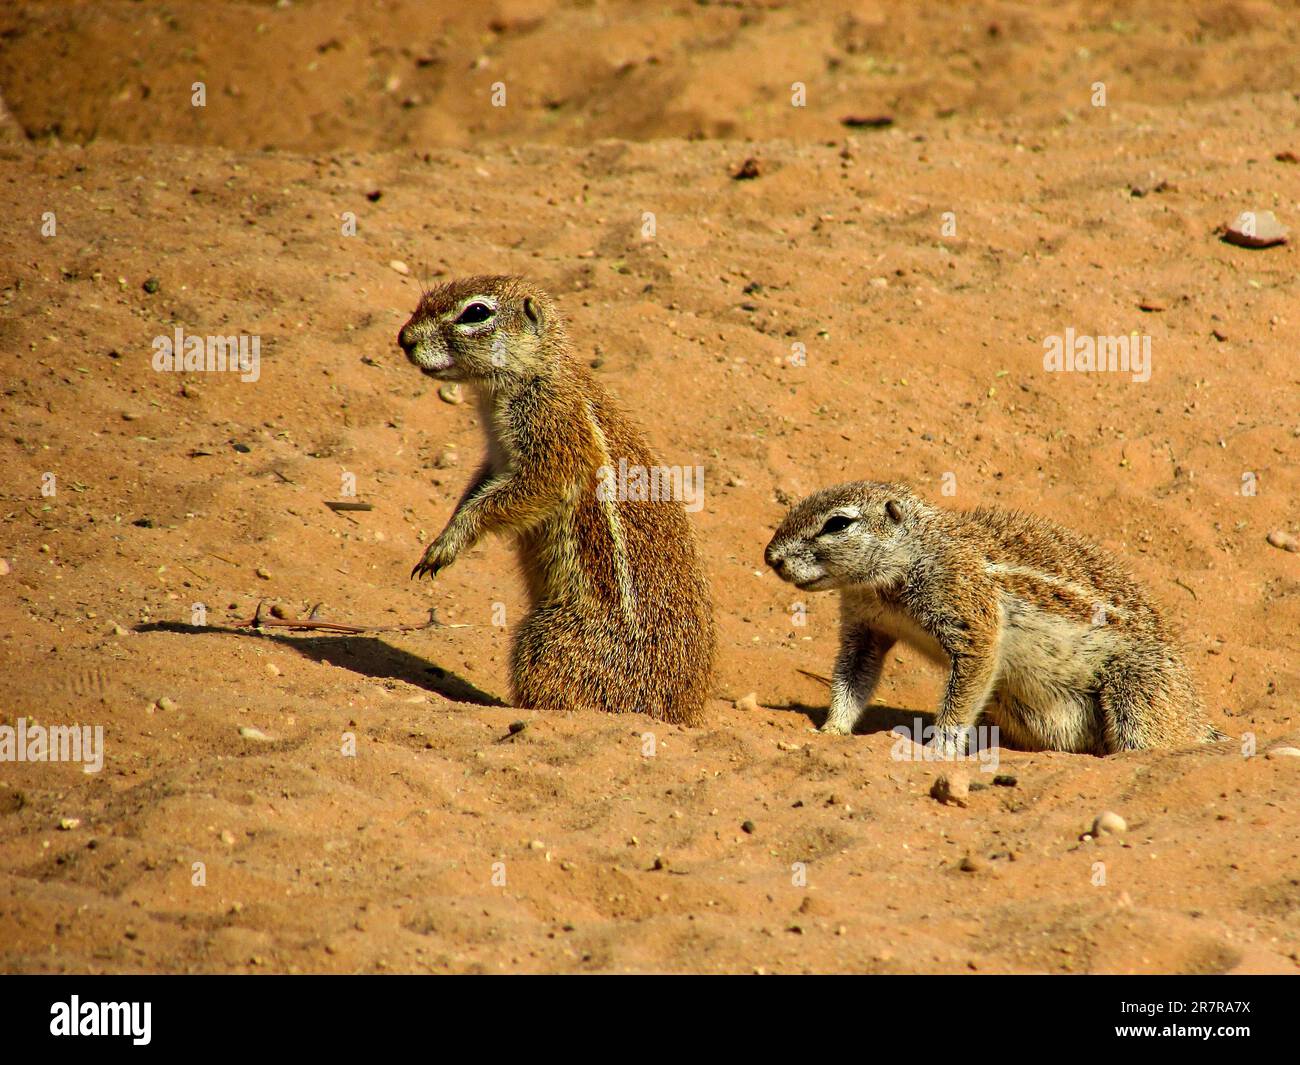 Deux écureuils terrestres, Xerus Inauris, dans les sables rougeâtres du désert de Kalahari, en Afrique du Sud. Banque D'Images